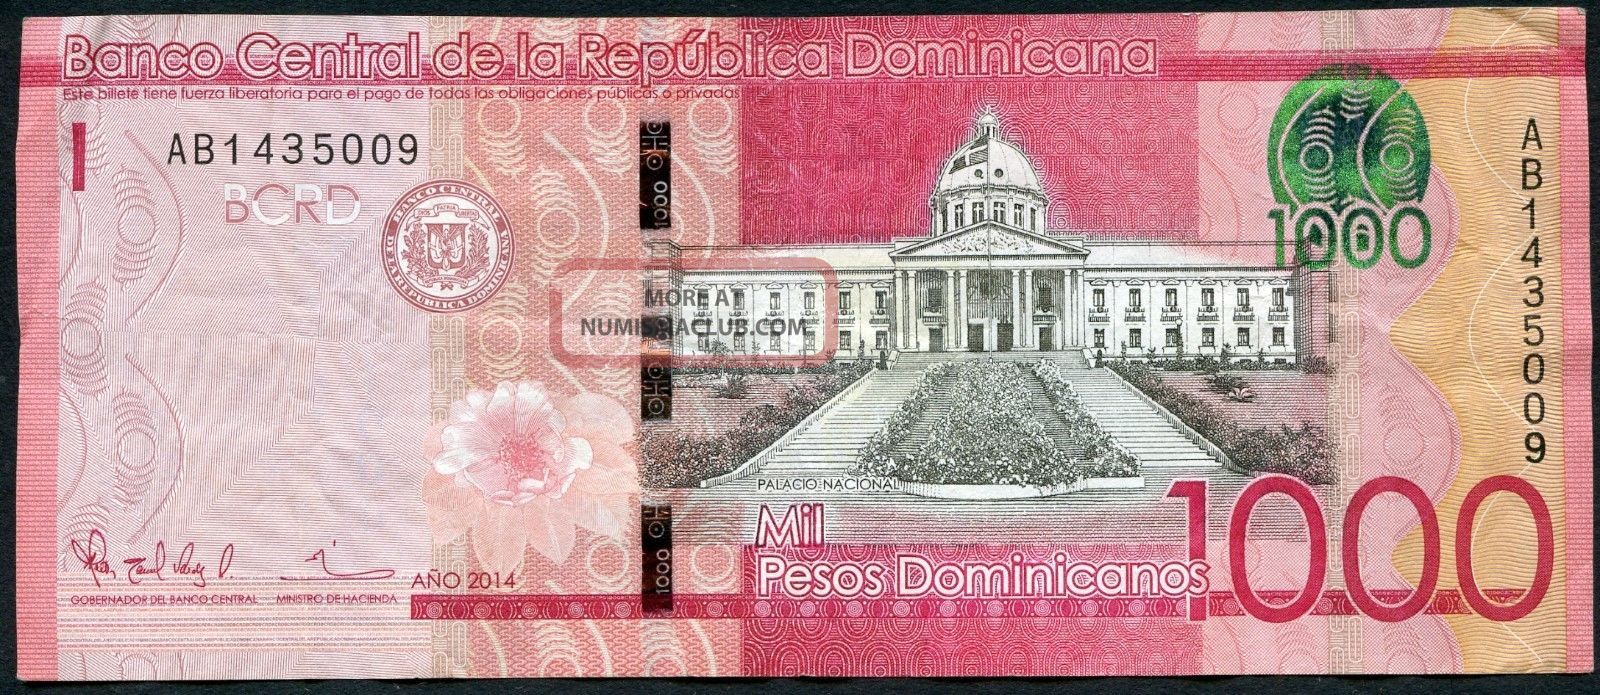 Dominican Republic 1 000 1000 Pesos Dominicanos 2014 Circulated Banknote 375